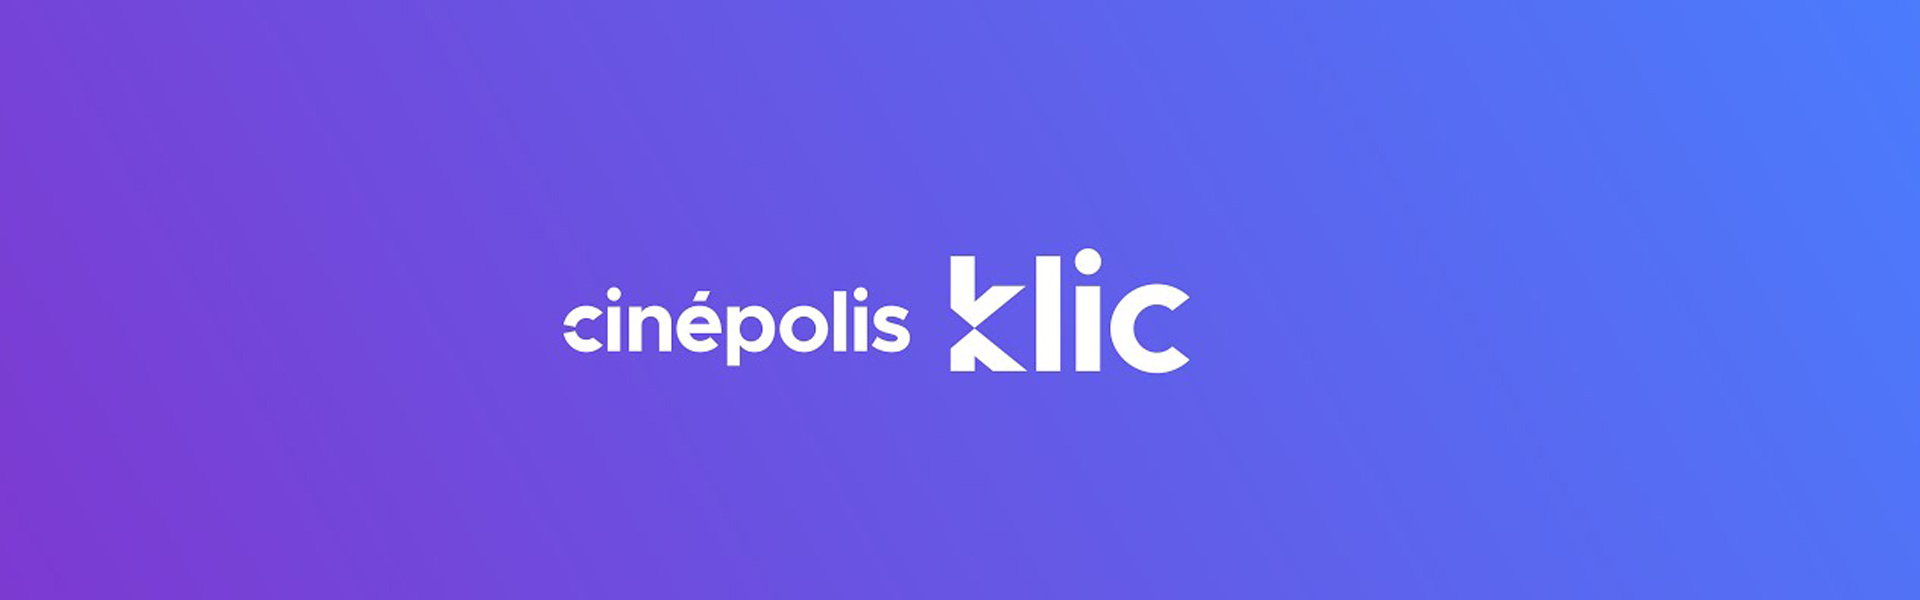 Cinépolis Klic anuncia el cierre de su plataforma